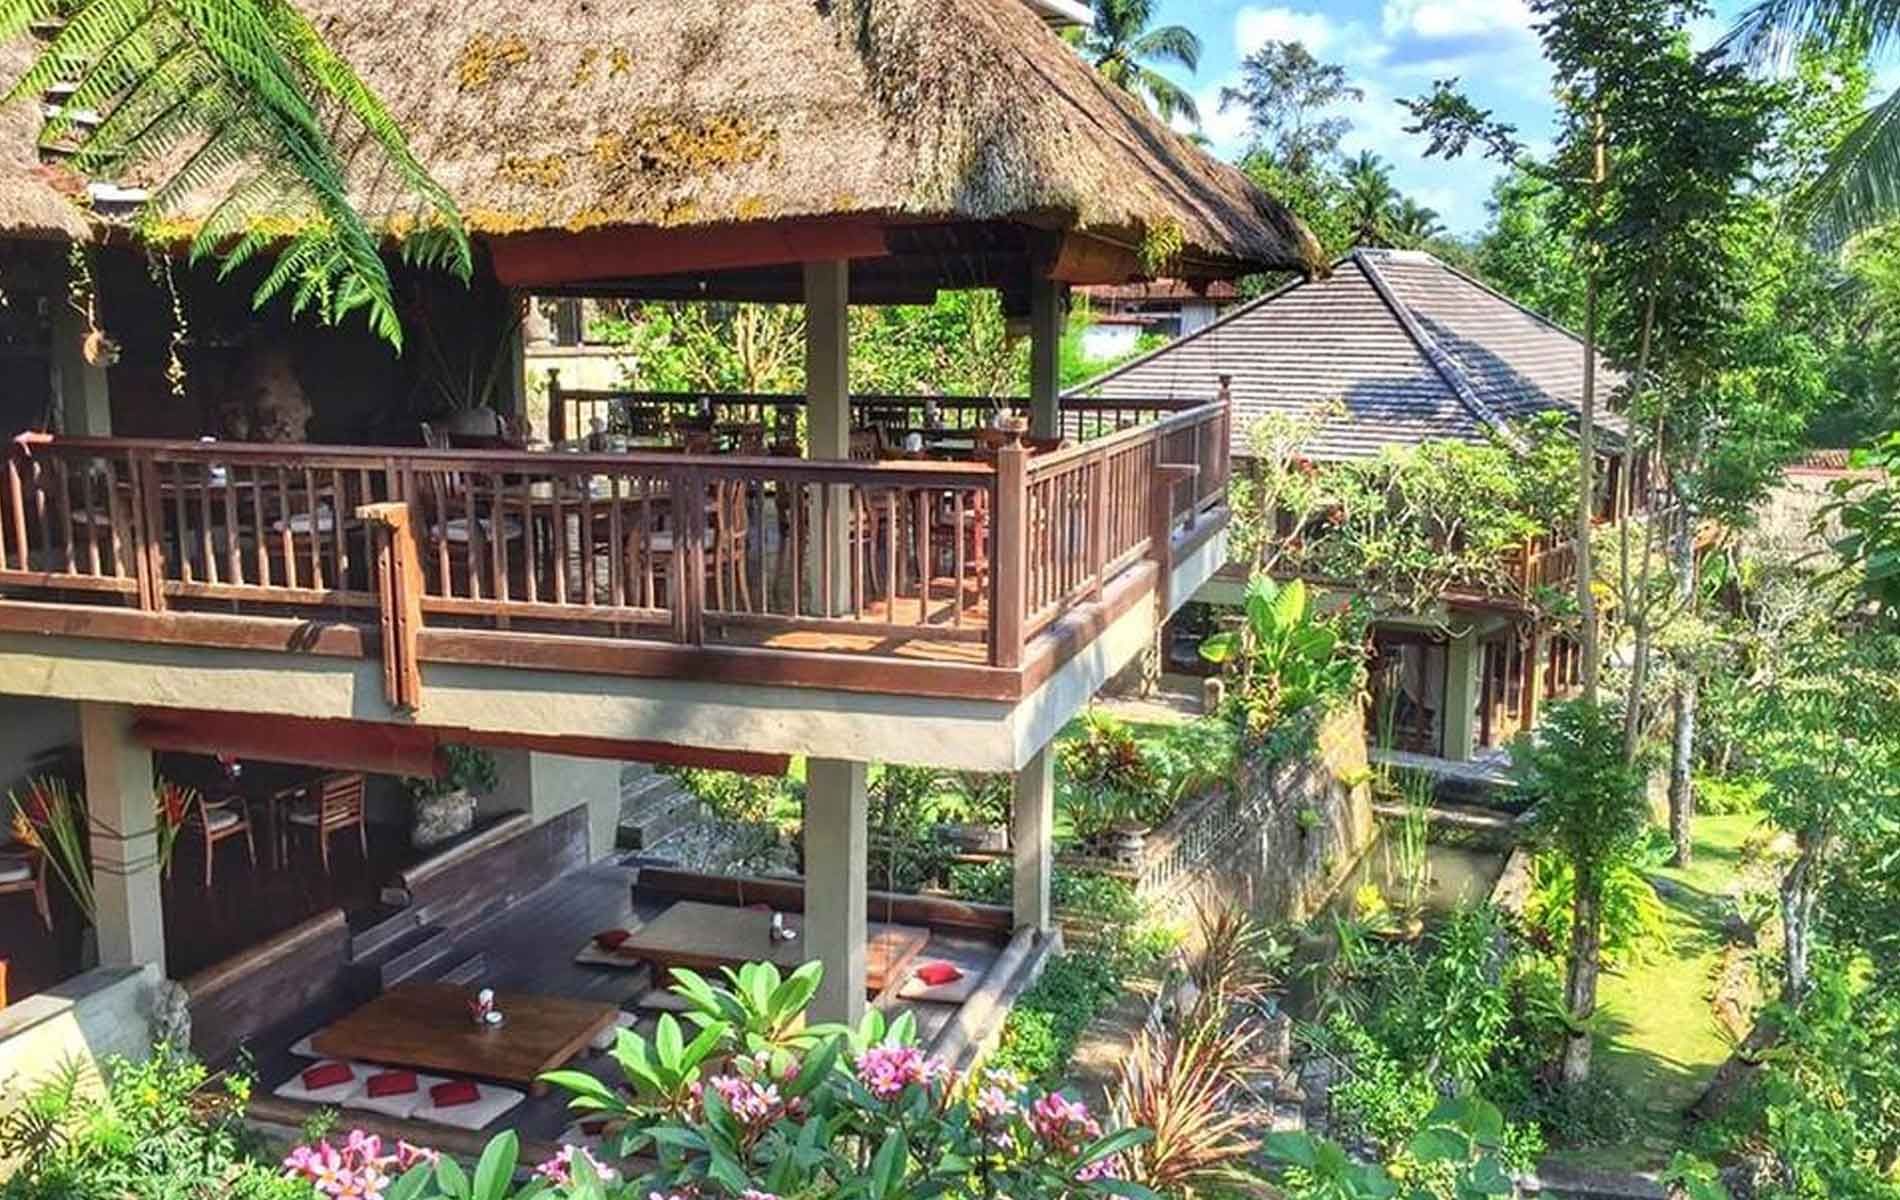 The Kampung Cafe, Salah Satu Restoran Terbaik di Bali